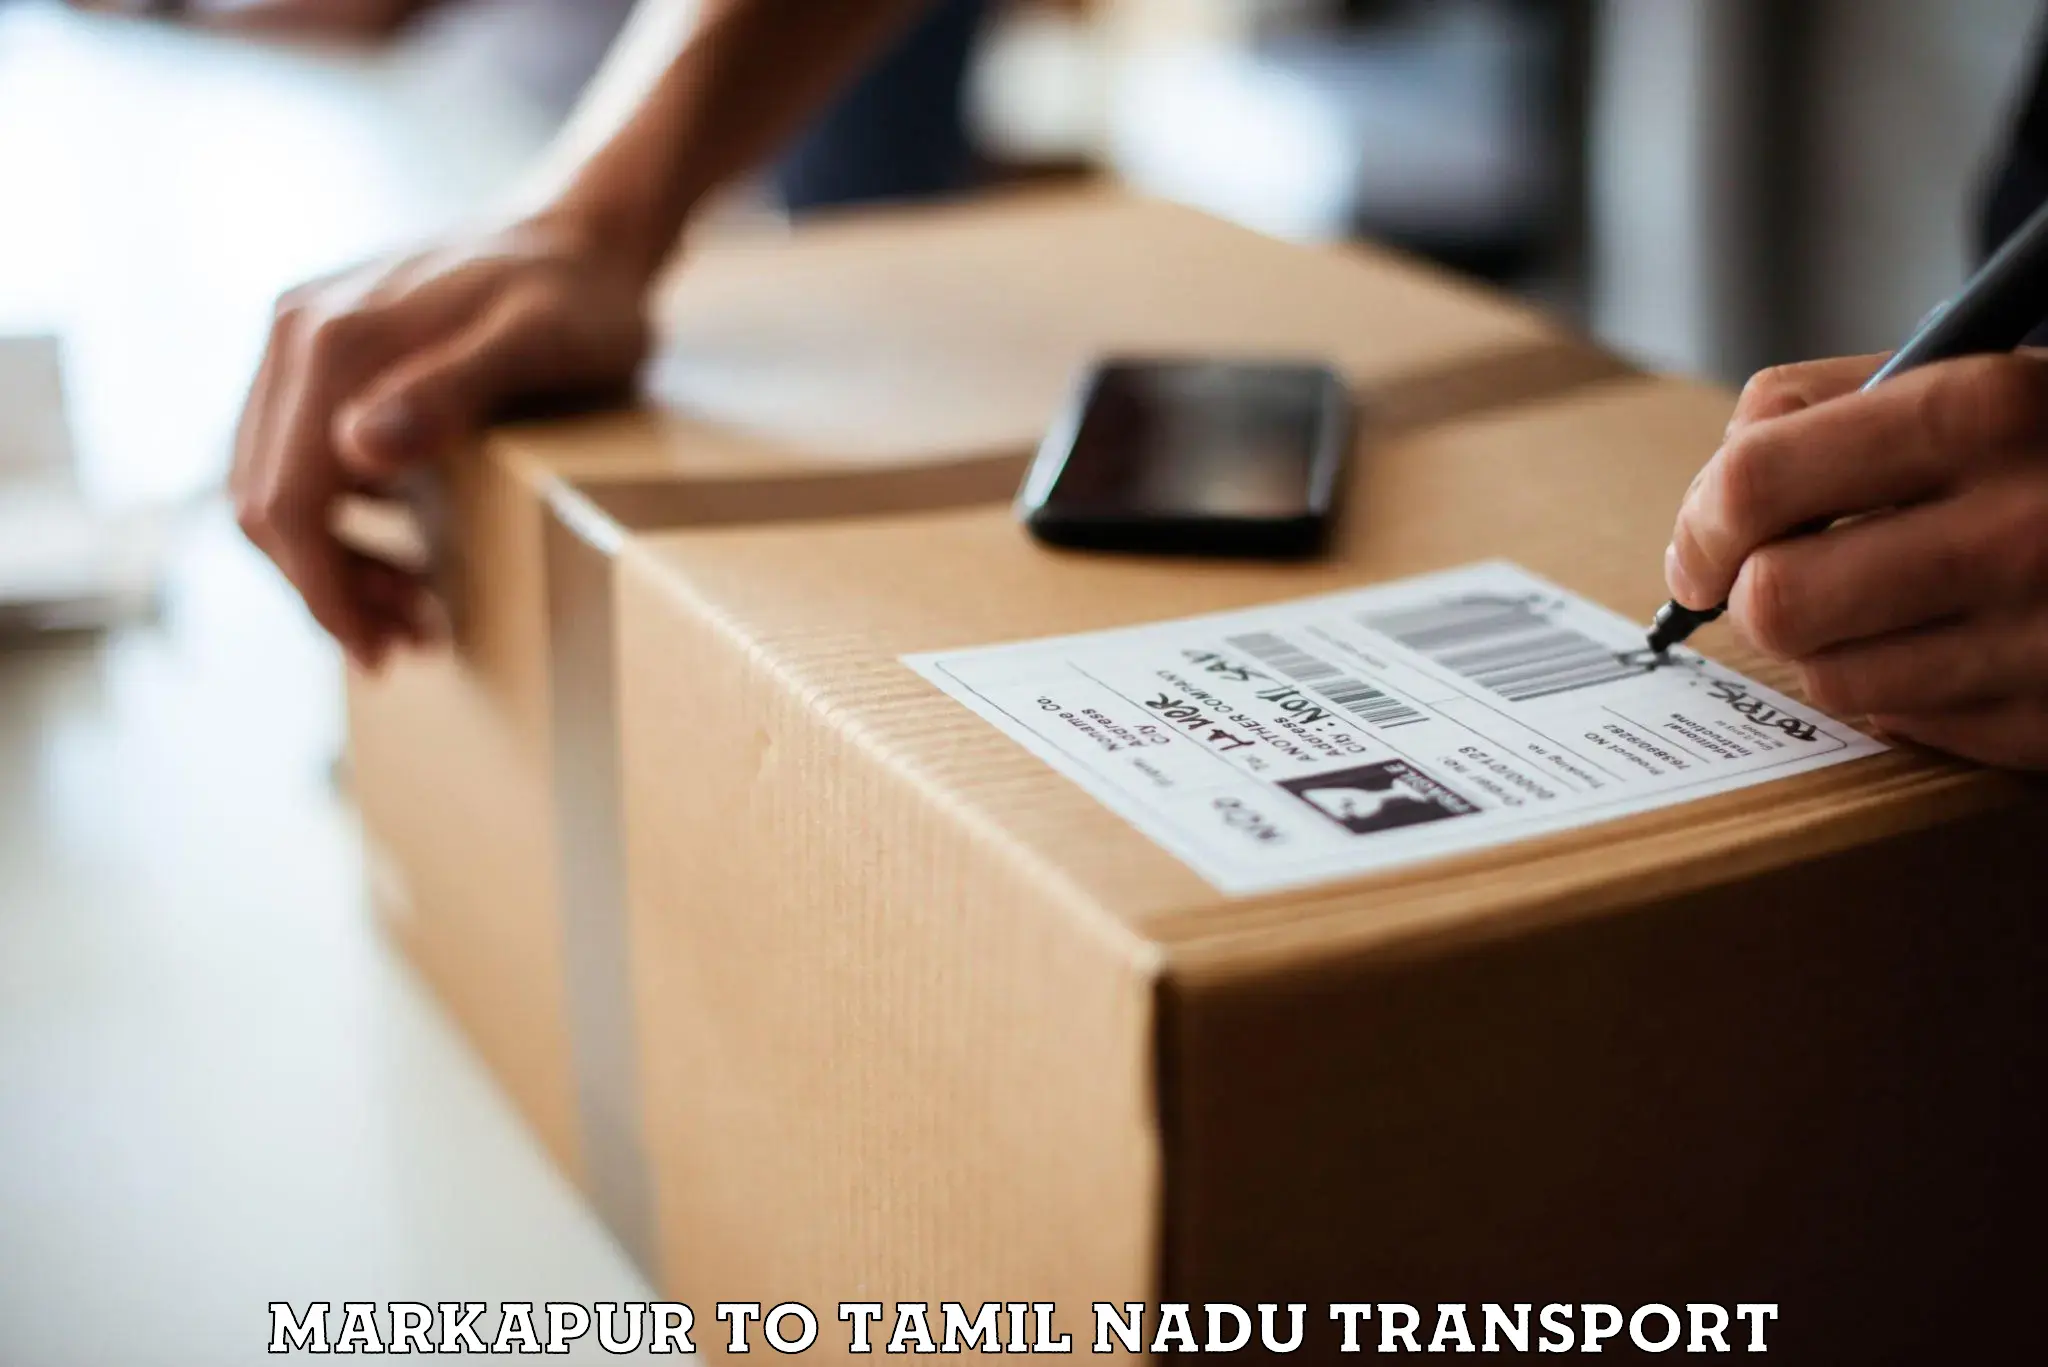 International cargo transportation services Markapur to Tamil Nadu